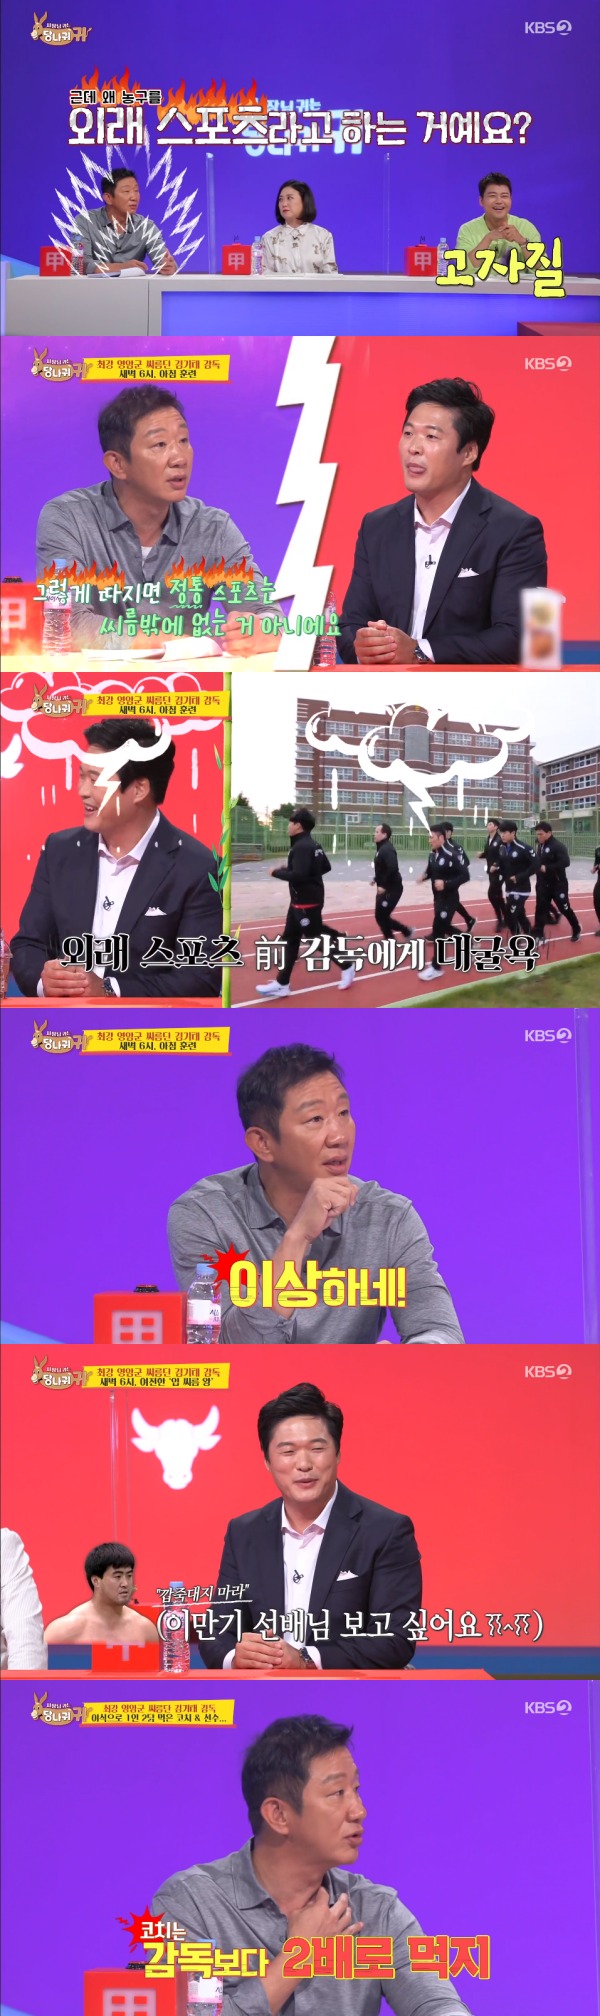 KBS 2TV '사장님 귀는 당나귀 귀' 방송 화면 캡처 © 뉴스1